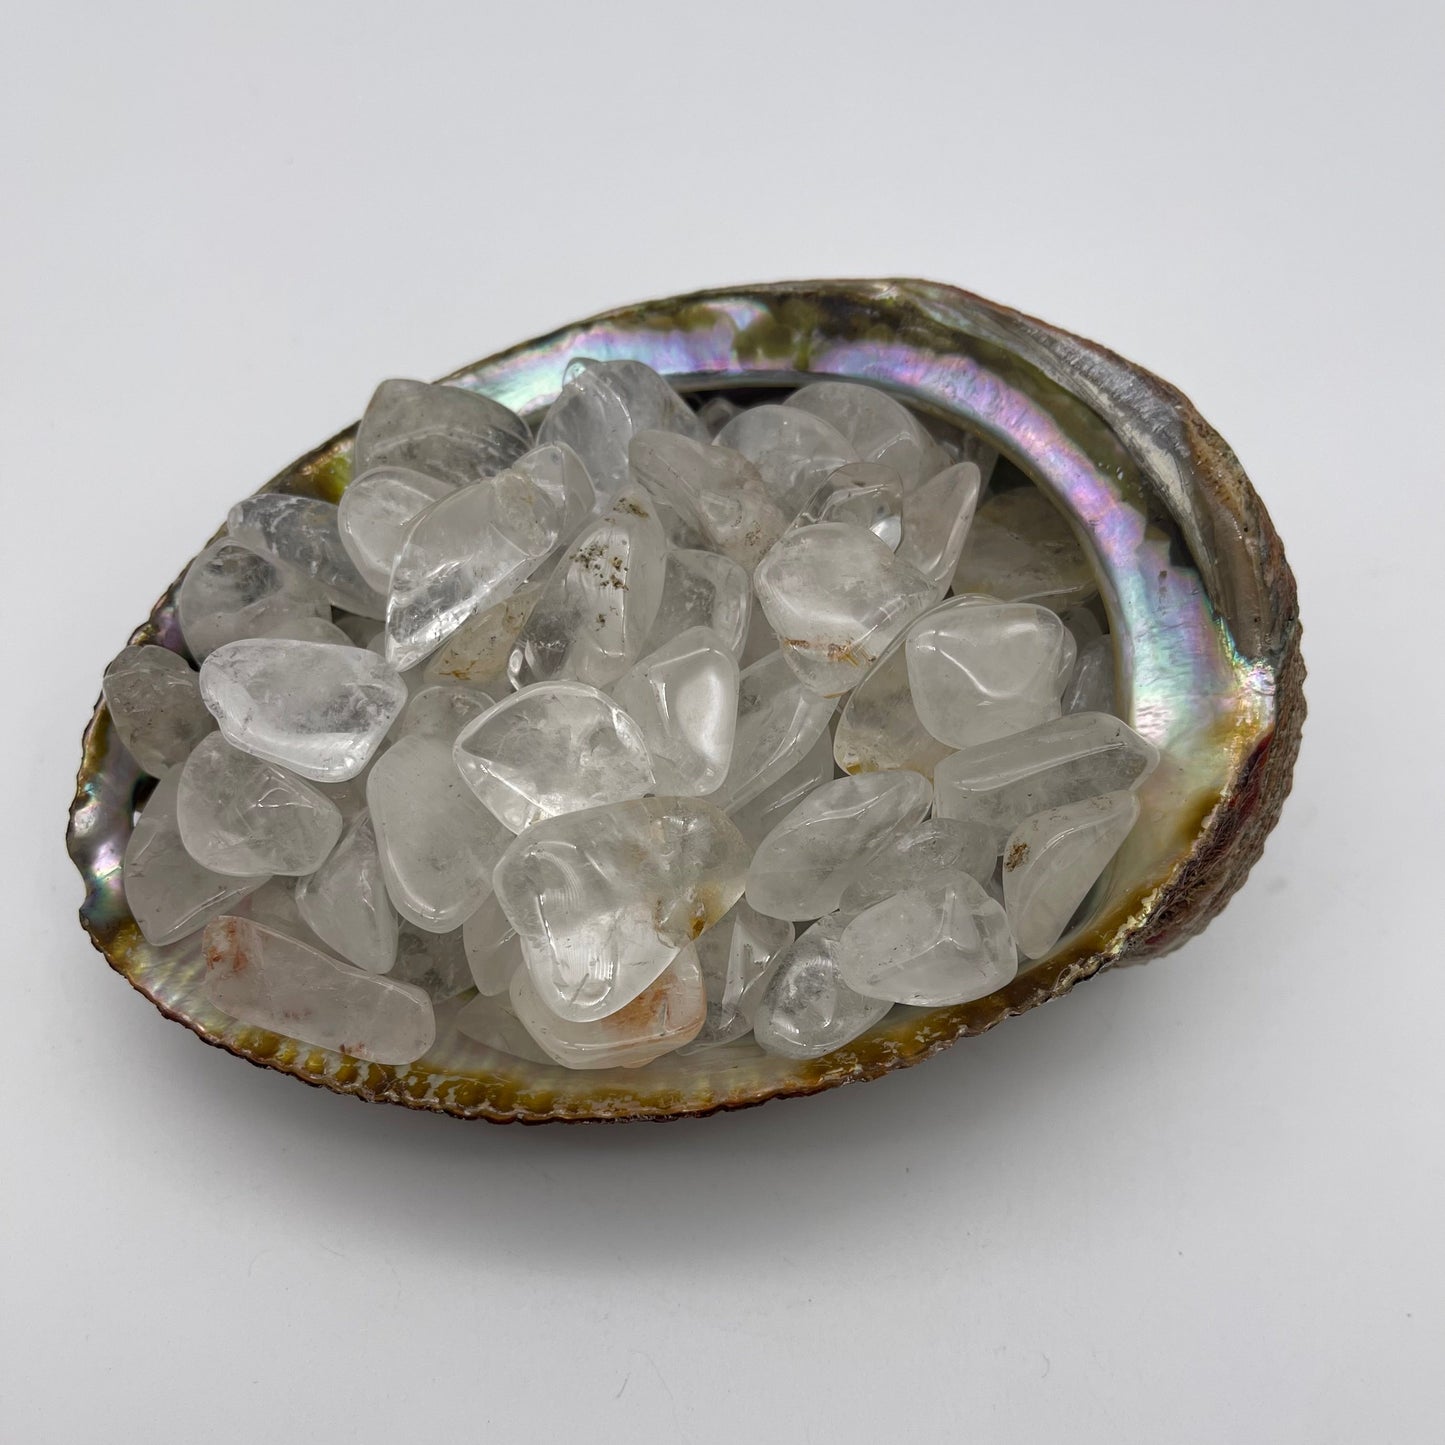 Clear Quartz Tumbled Stones Stones Crystal Shop